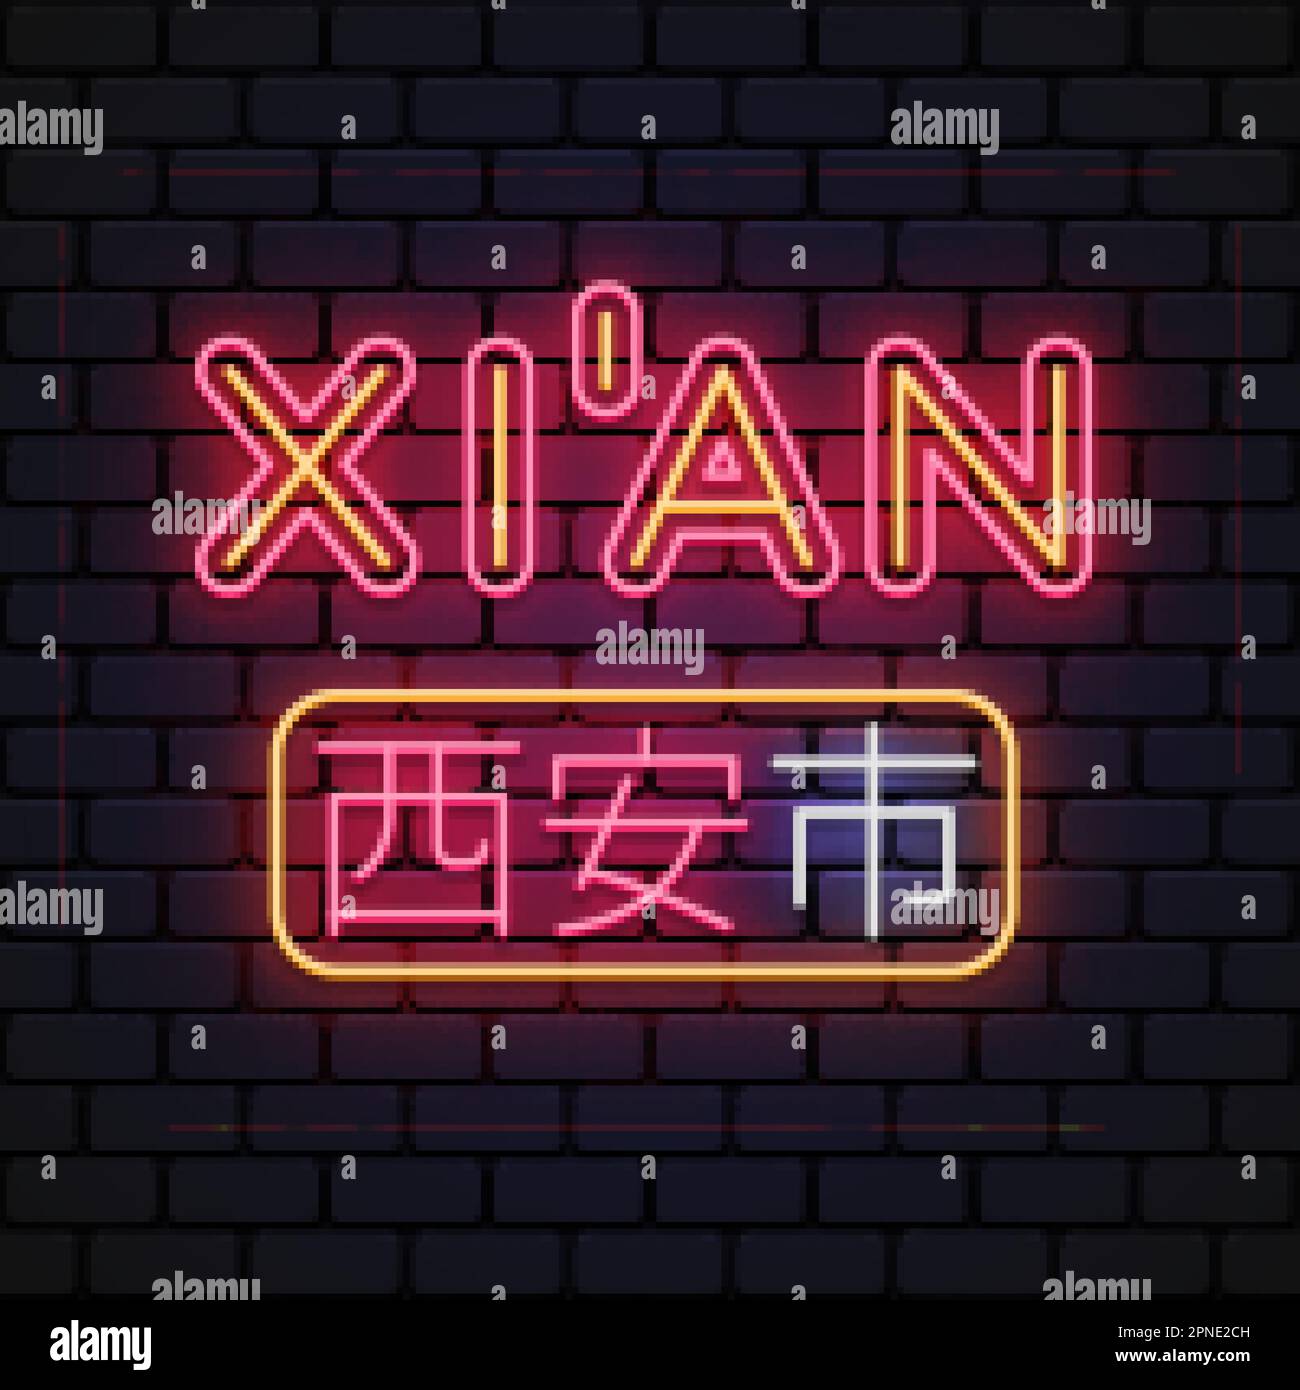 Panneau Xian City Modern Neon. Une ville en Chine. Conception à toutes fins. Translater Xian. Illustration vectorielle Illustration de Vecteur